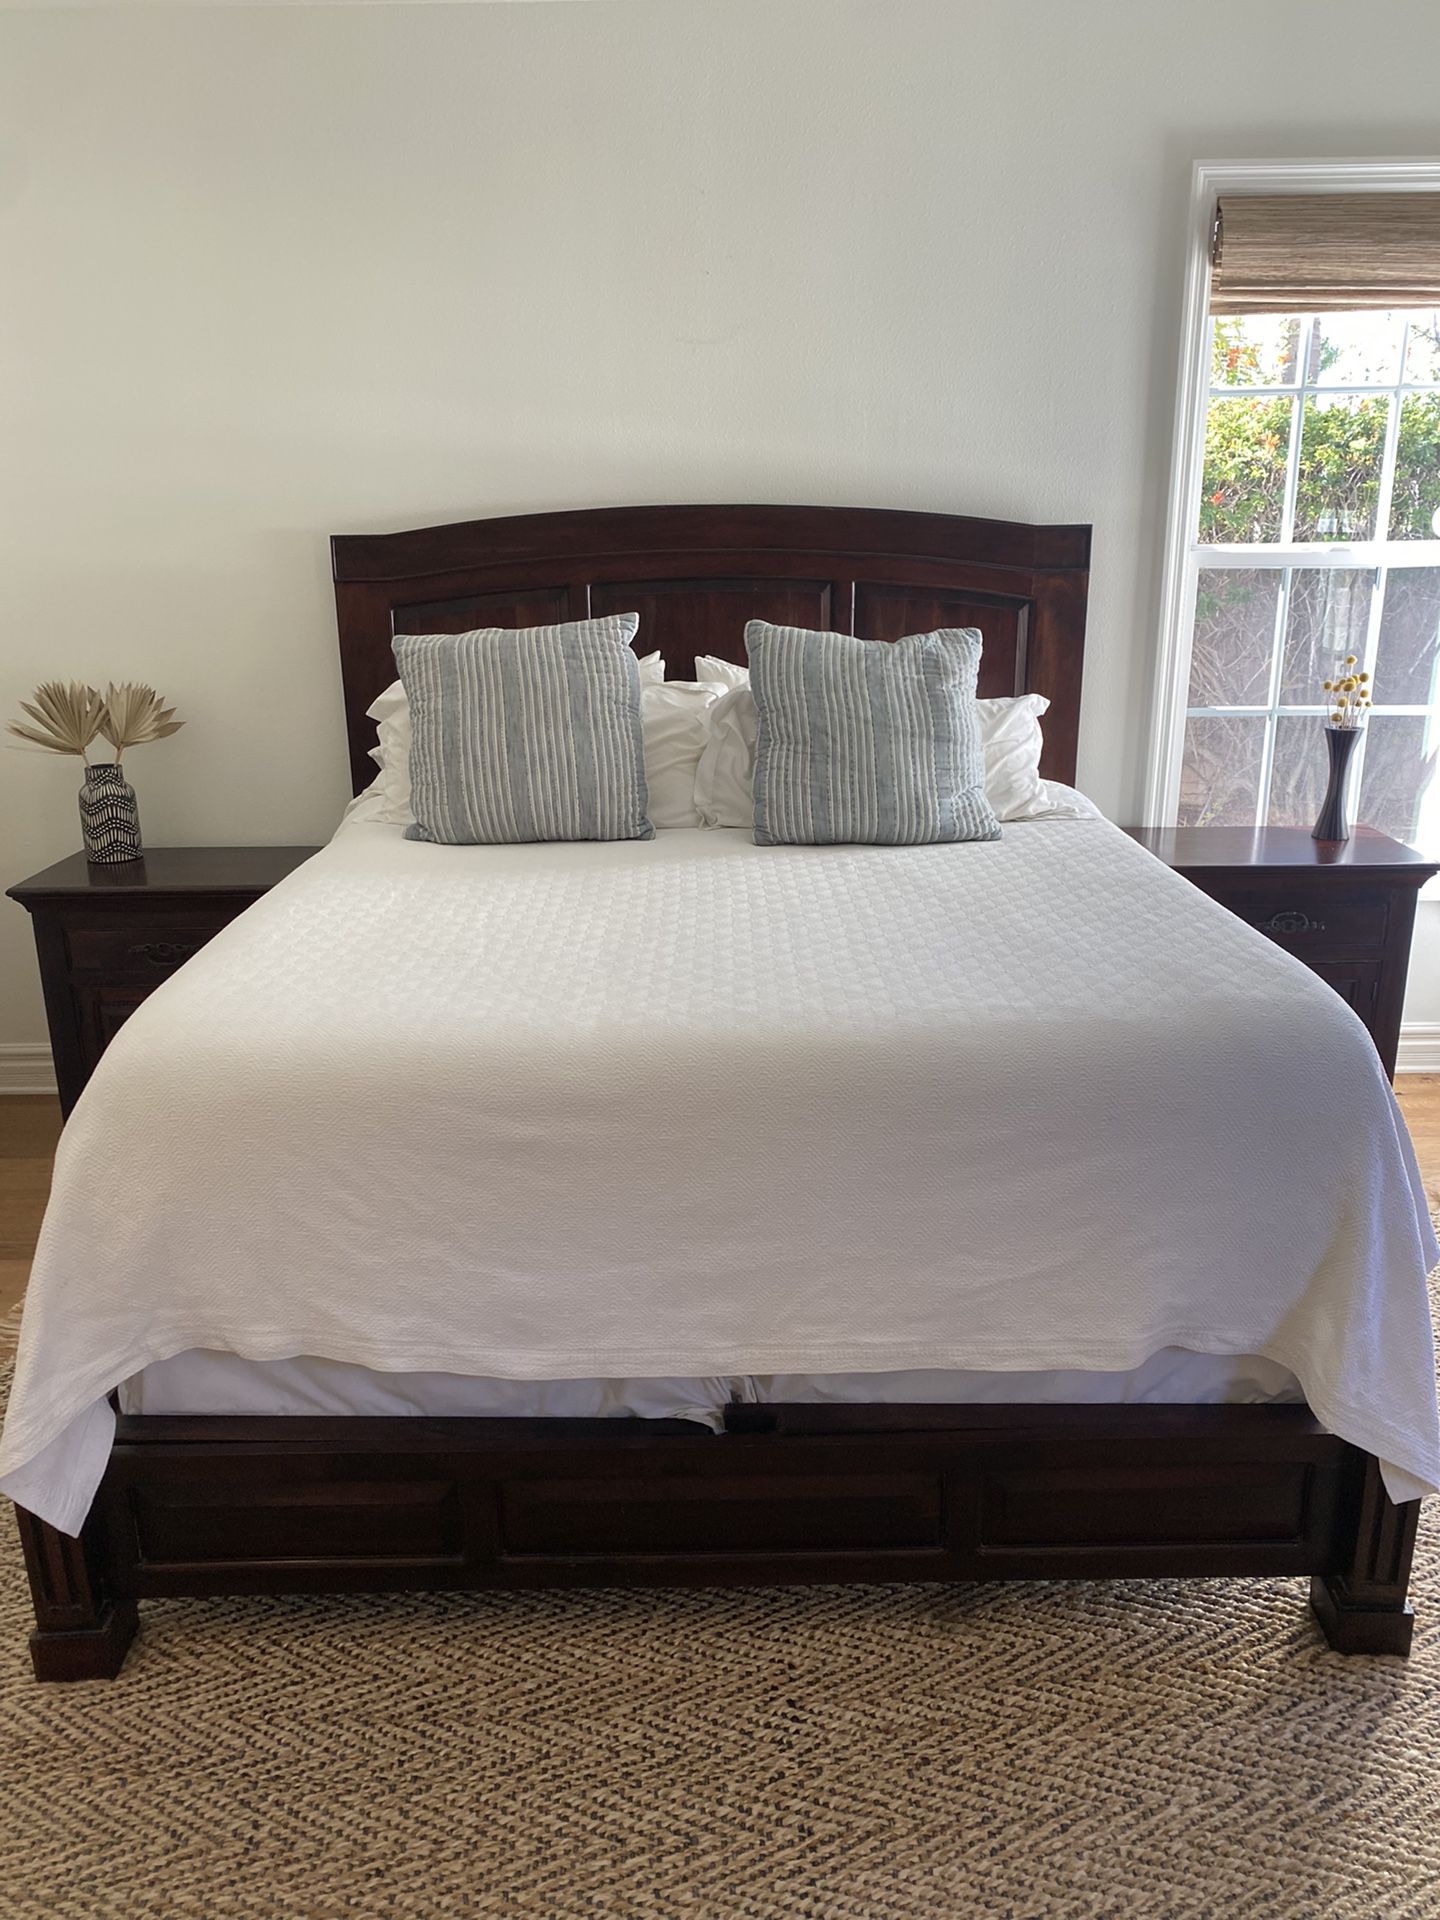 Master Bedroom set - Solid wood - High end - Cal King Bed frame, 2 Nightstands, Tall Dresser